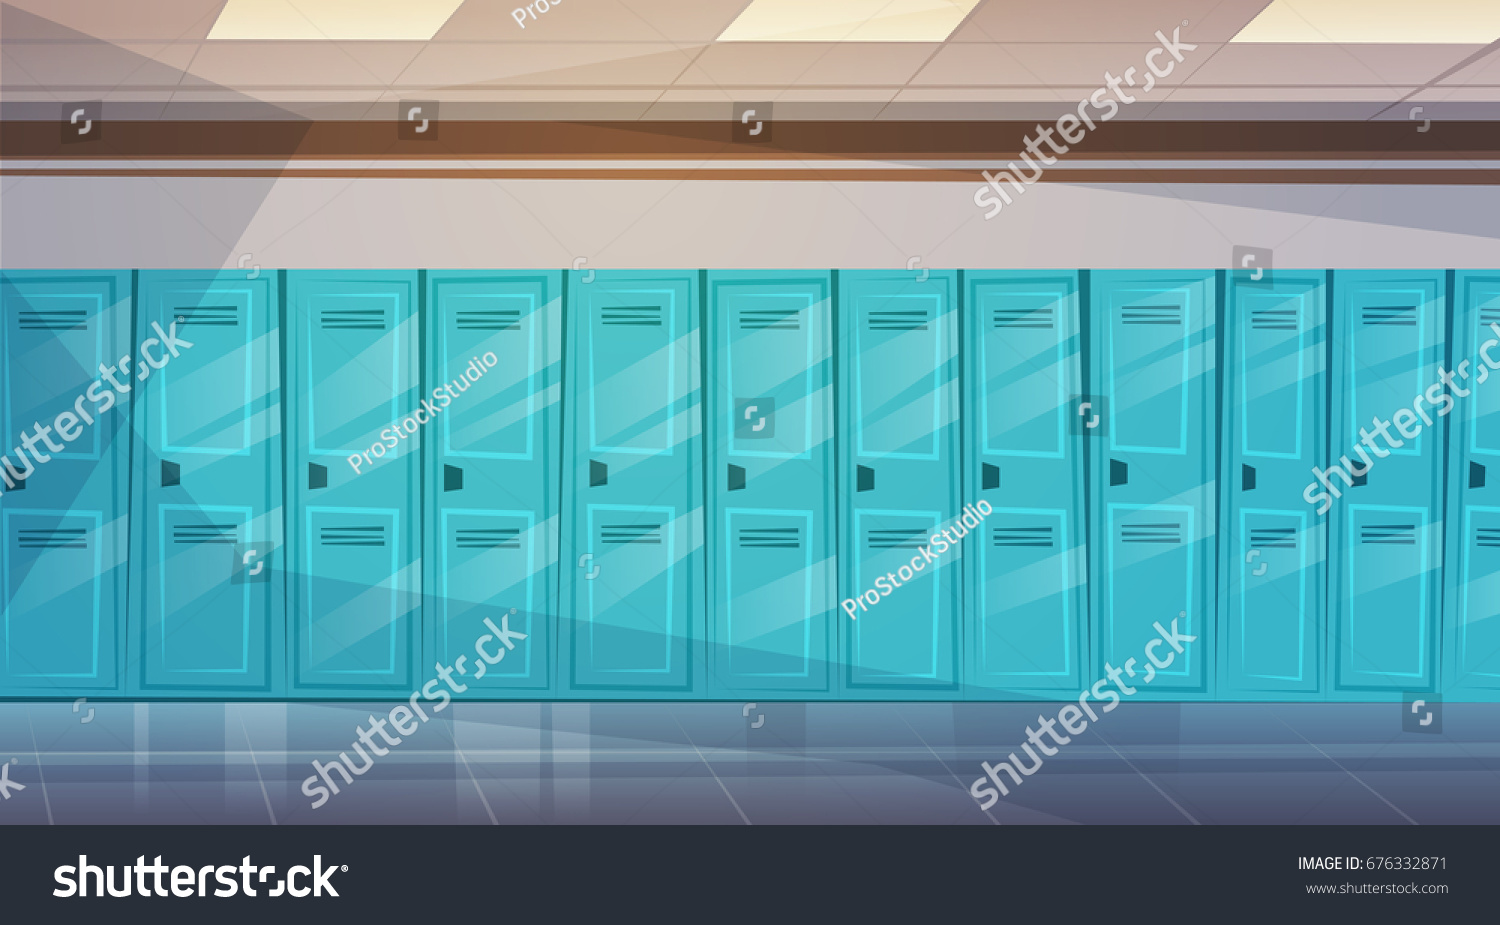 Шкаф гача. Школьные шкафчики. Школьные шкафчики на зеленом фоне. Коридор школы со шкафчиками.